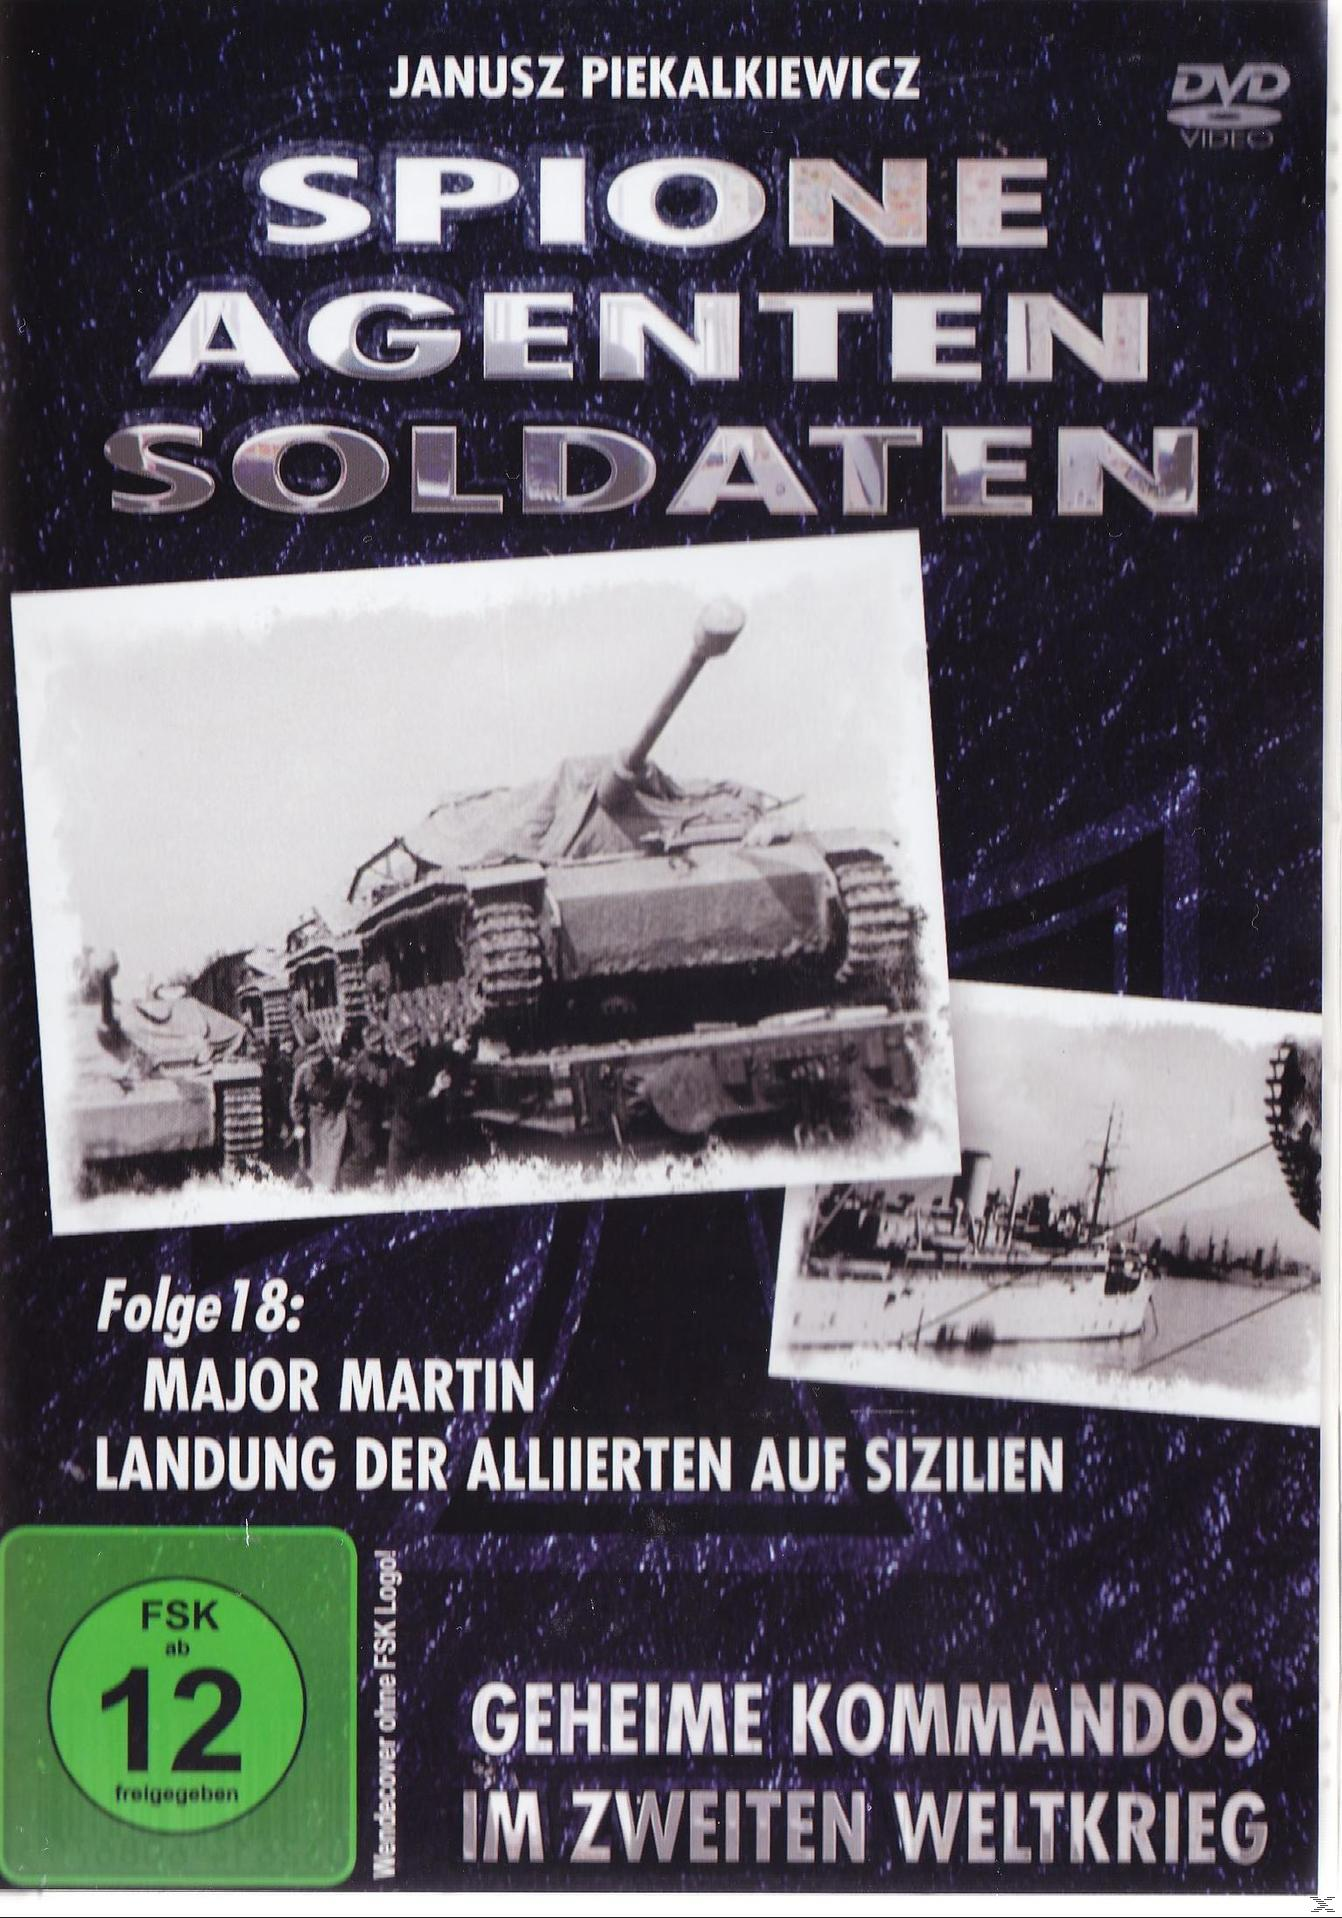 Spione, Agenten, Soldaten, Folge 18 Major - der auf DVD Martin: Landung Sizilien Alliierten